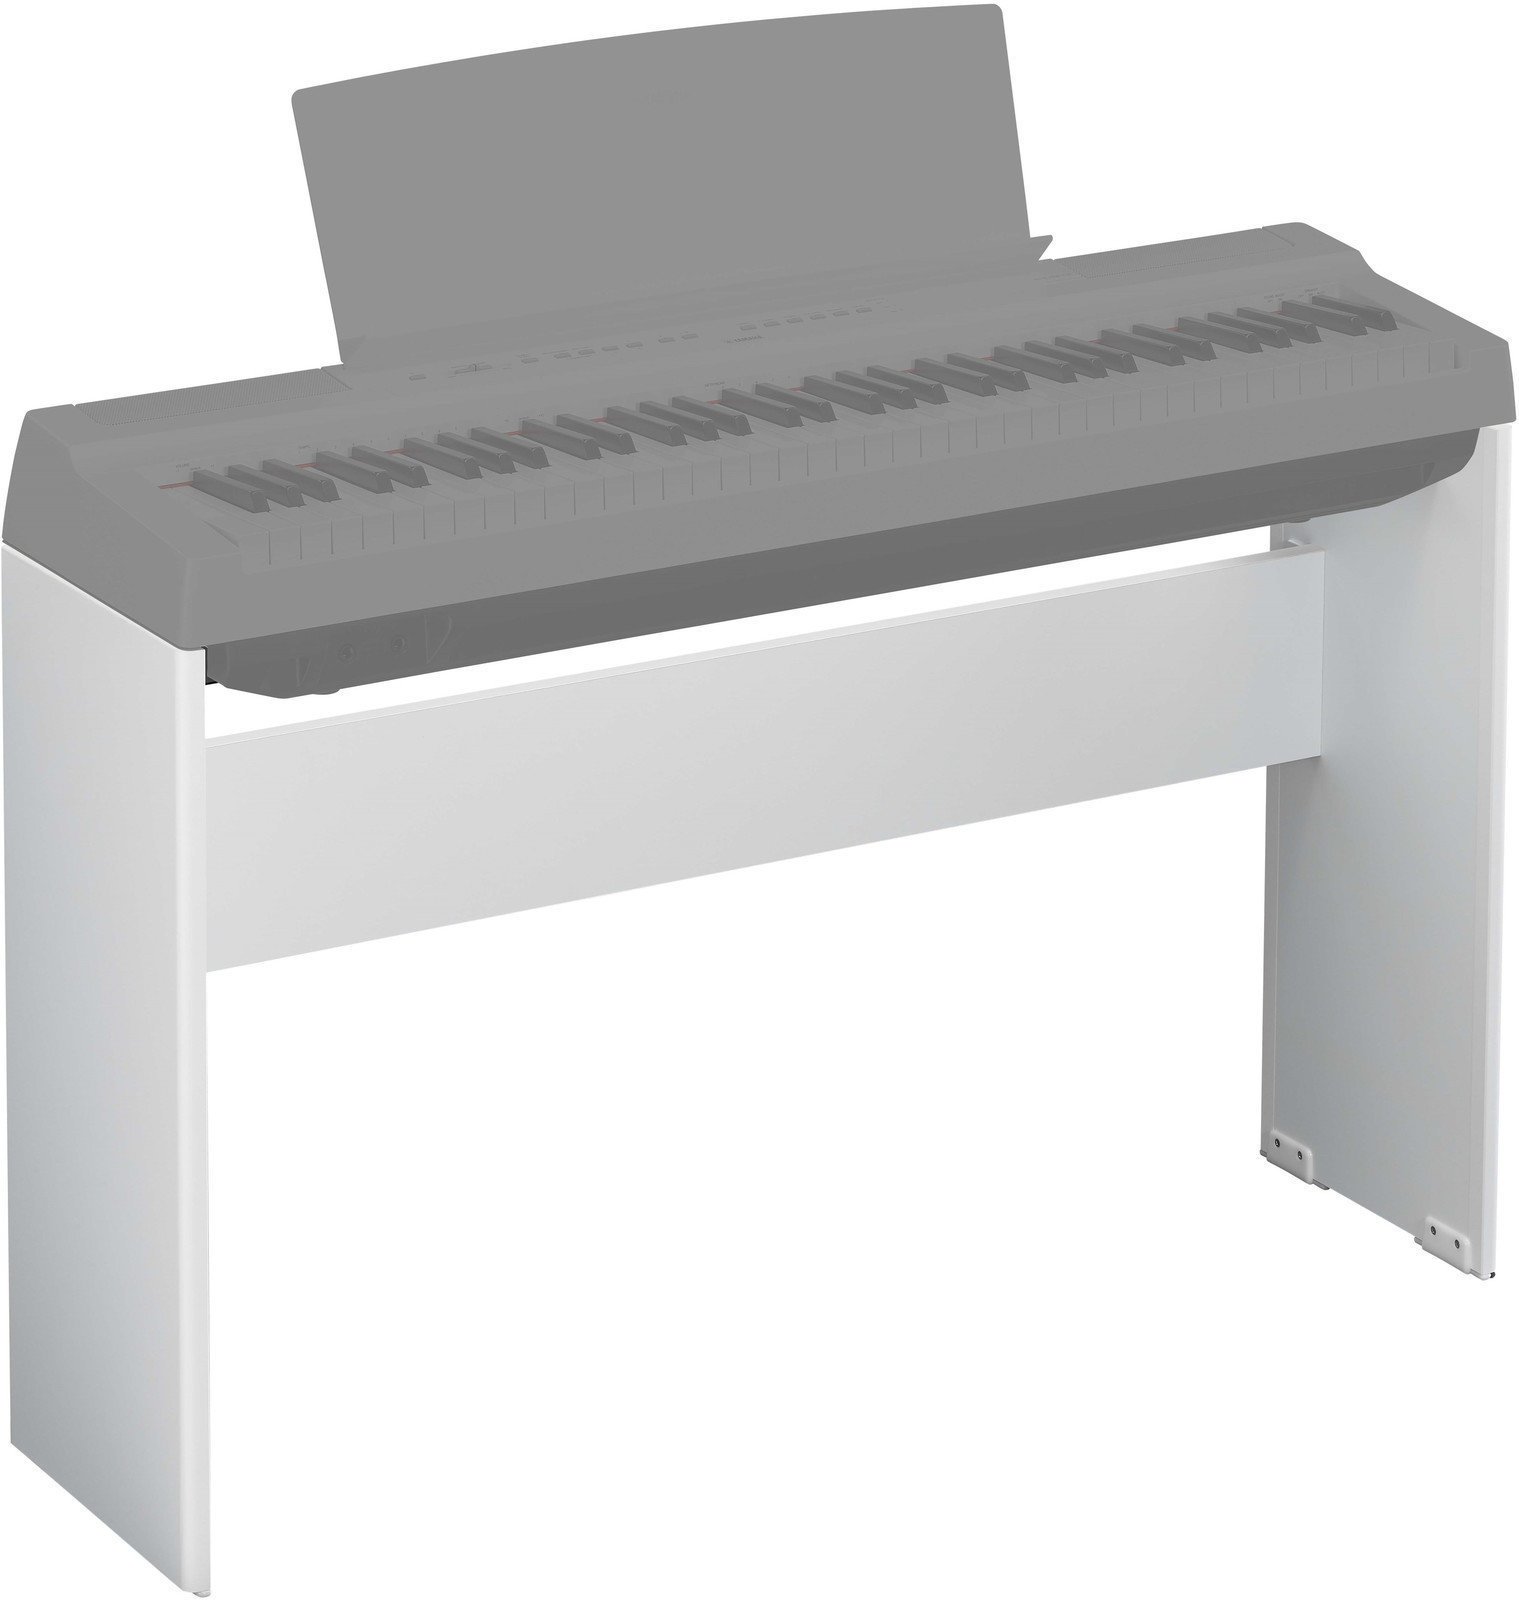 Support de clavier en bois
 Yamaha L-121 Blanc (Déjà utilisé)